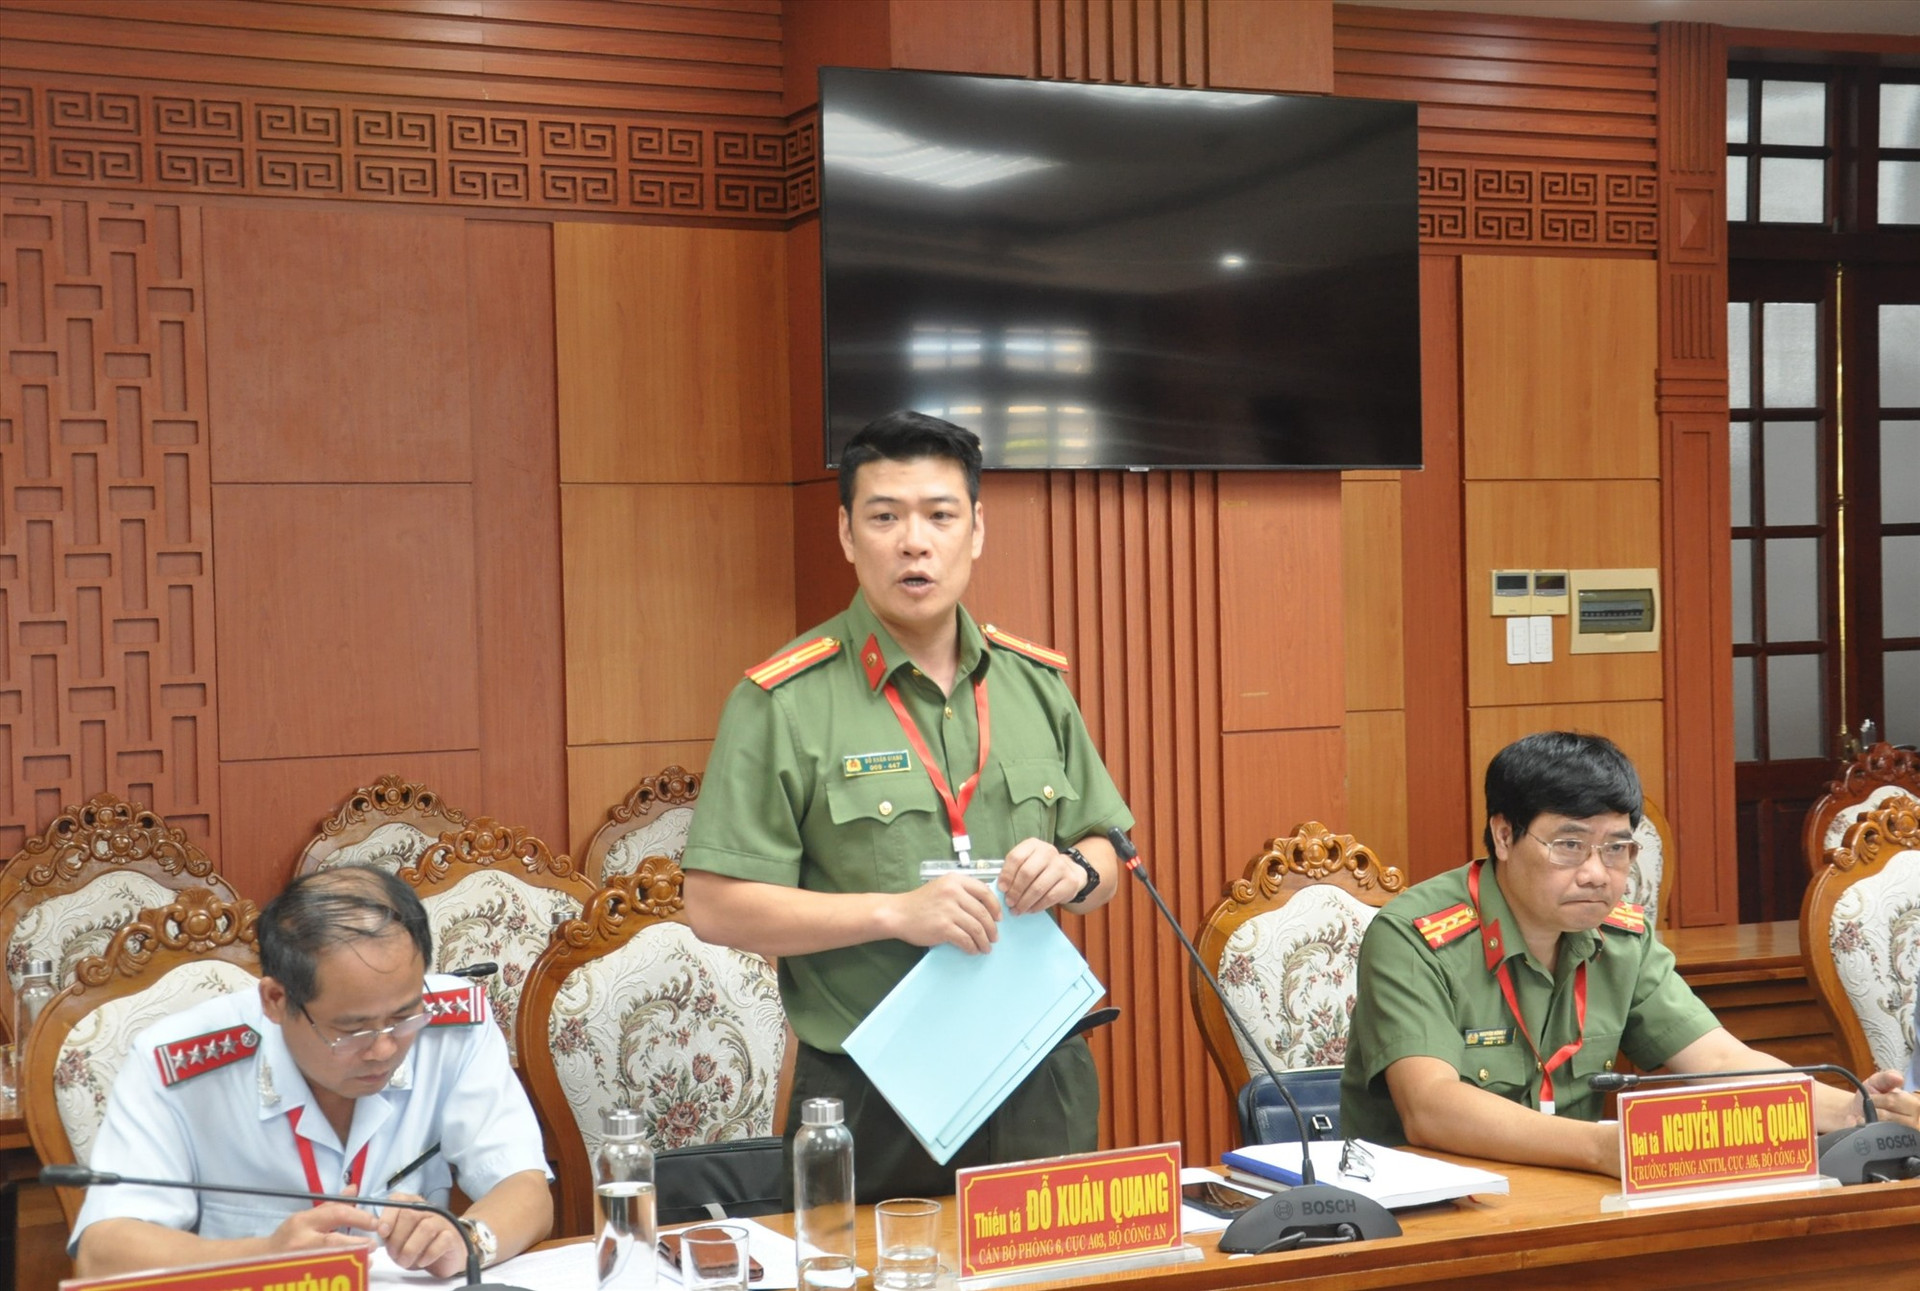 Thiếu tá Đỗ Xuân Giang - cán bộ Cục A03 Bộ Công an phát biểu tại cuộc làm việc. Ảnh: X.P